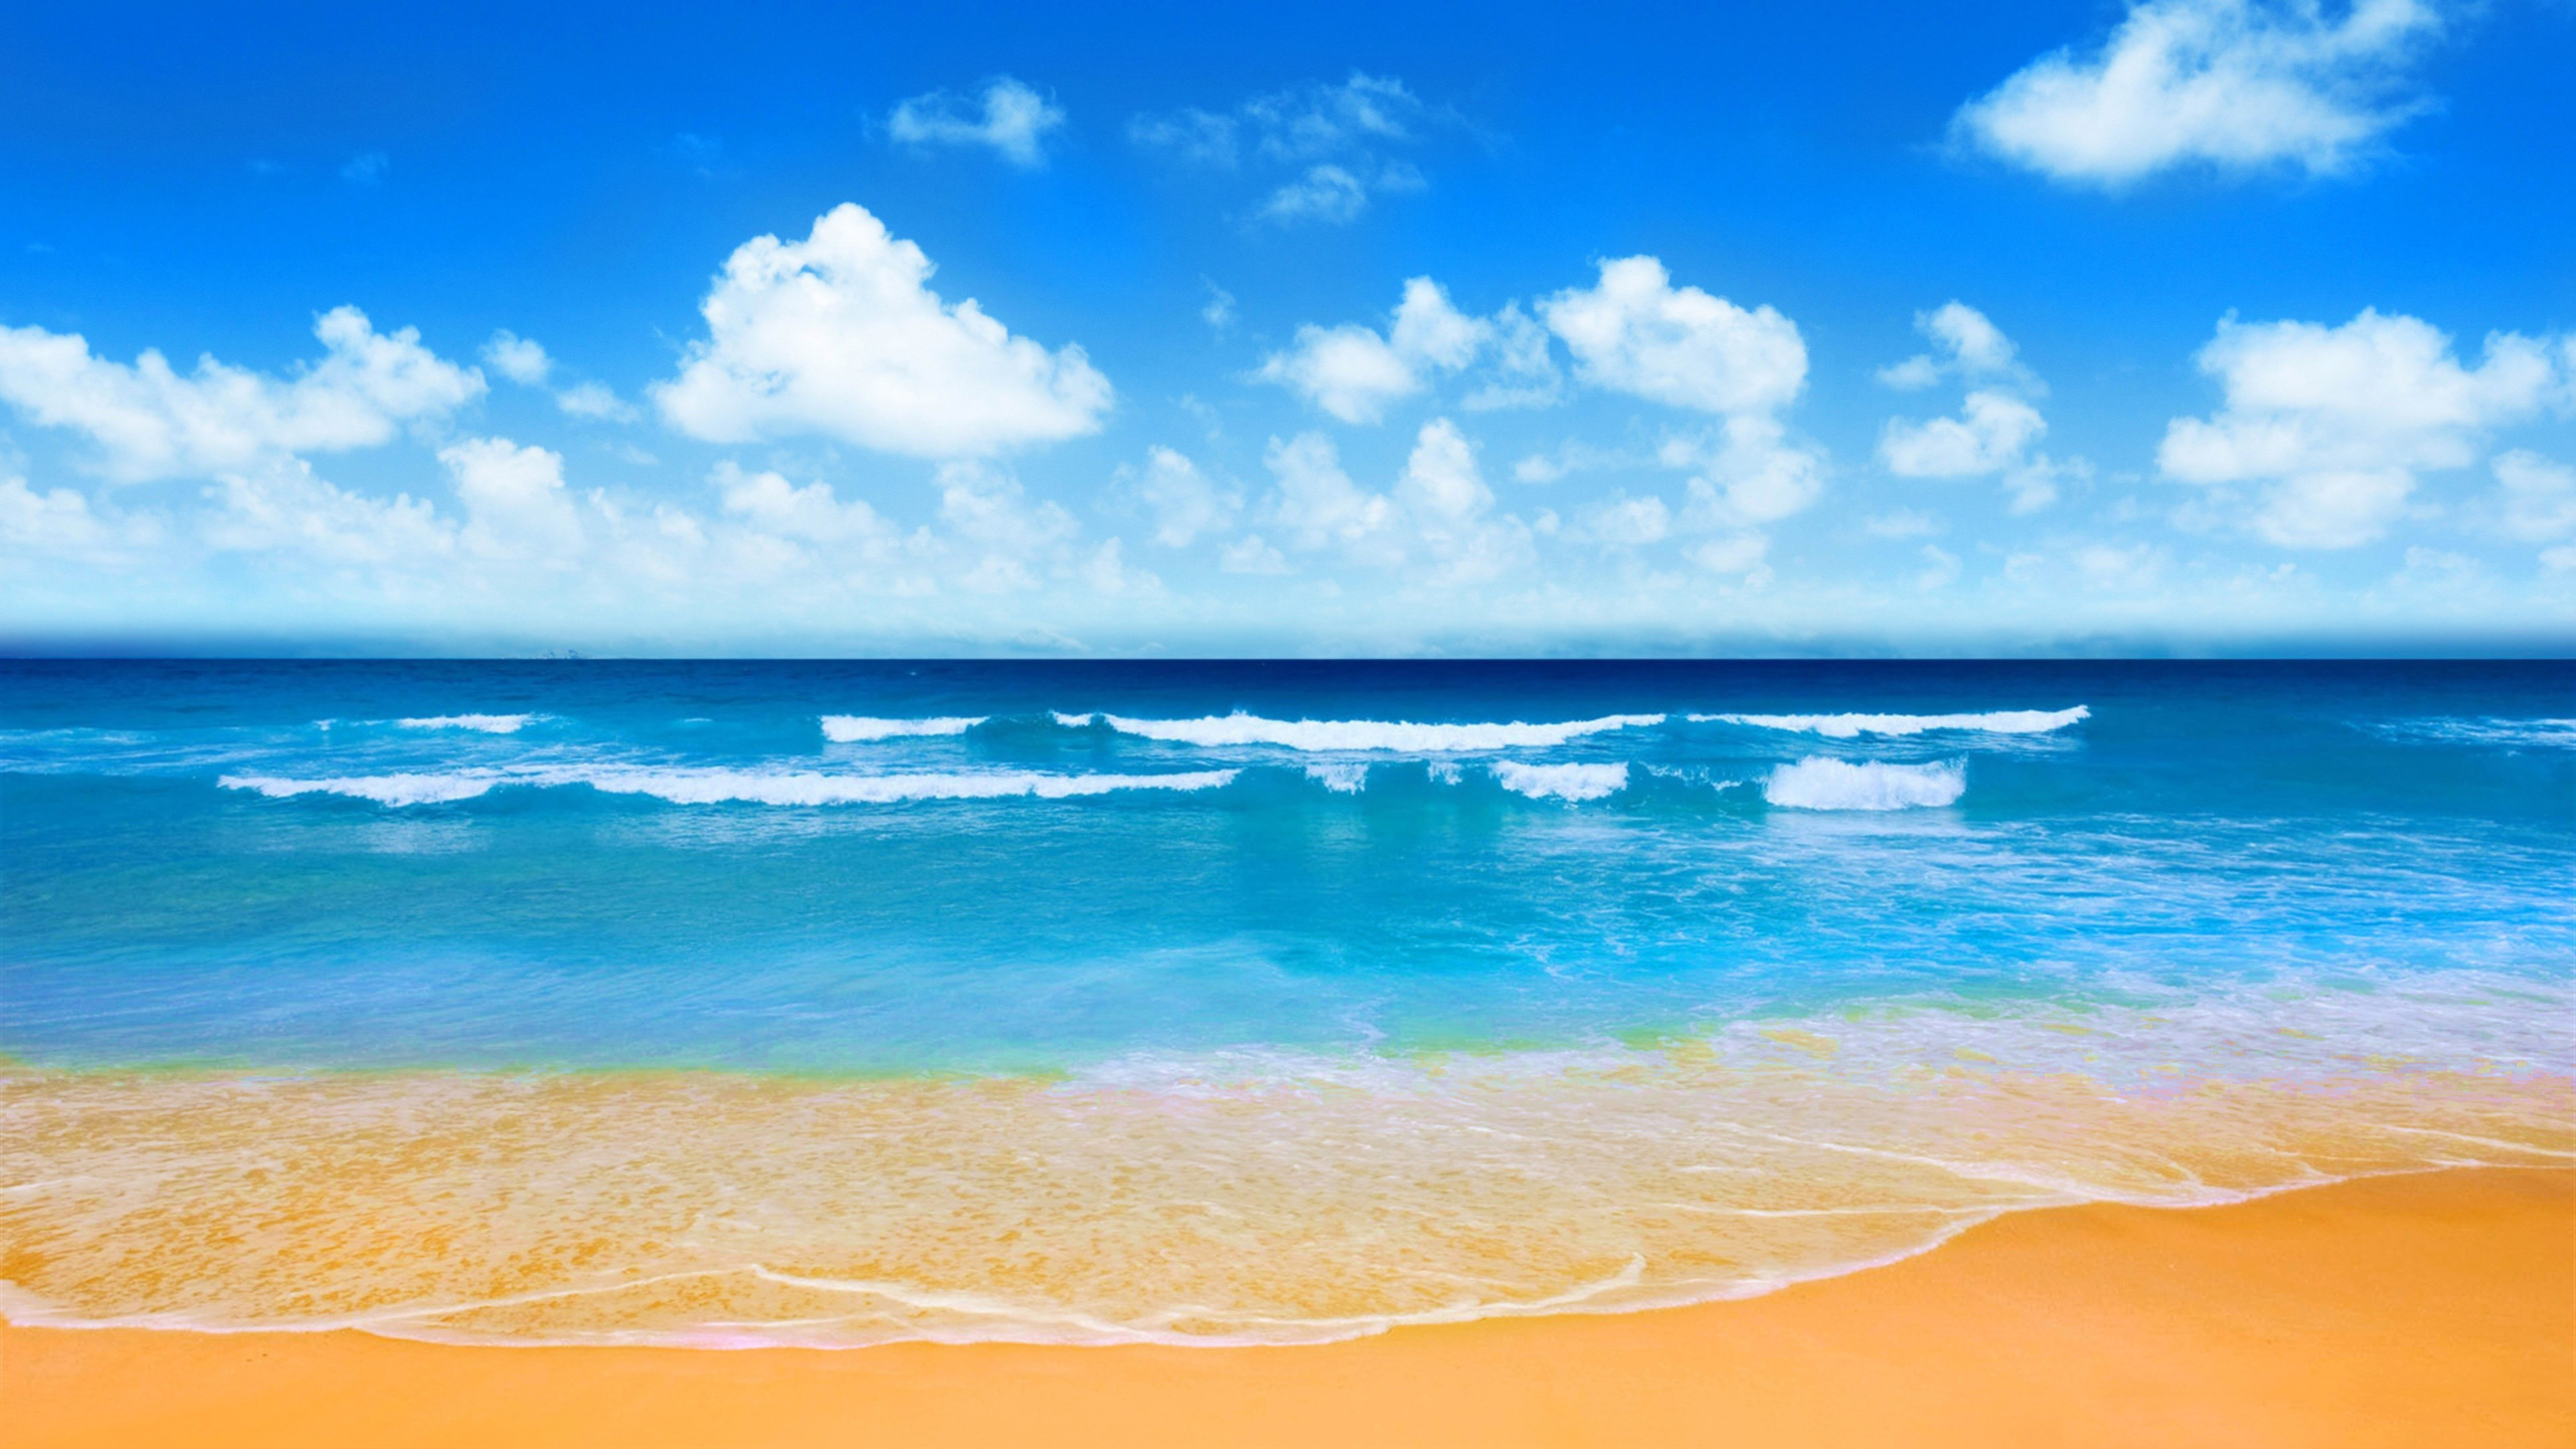 700.000+ ảnh đẹp nhất về Cảnh Biển · Tải xuống miễn phí 100% · Ảnh có sẵn  của Pexels